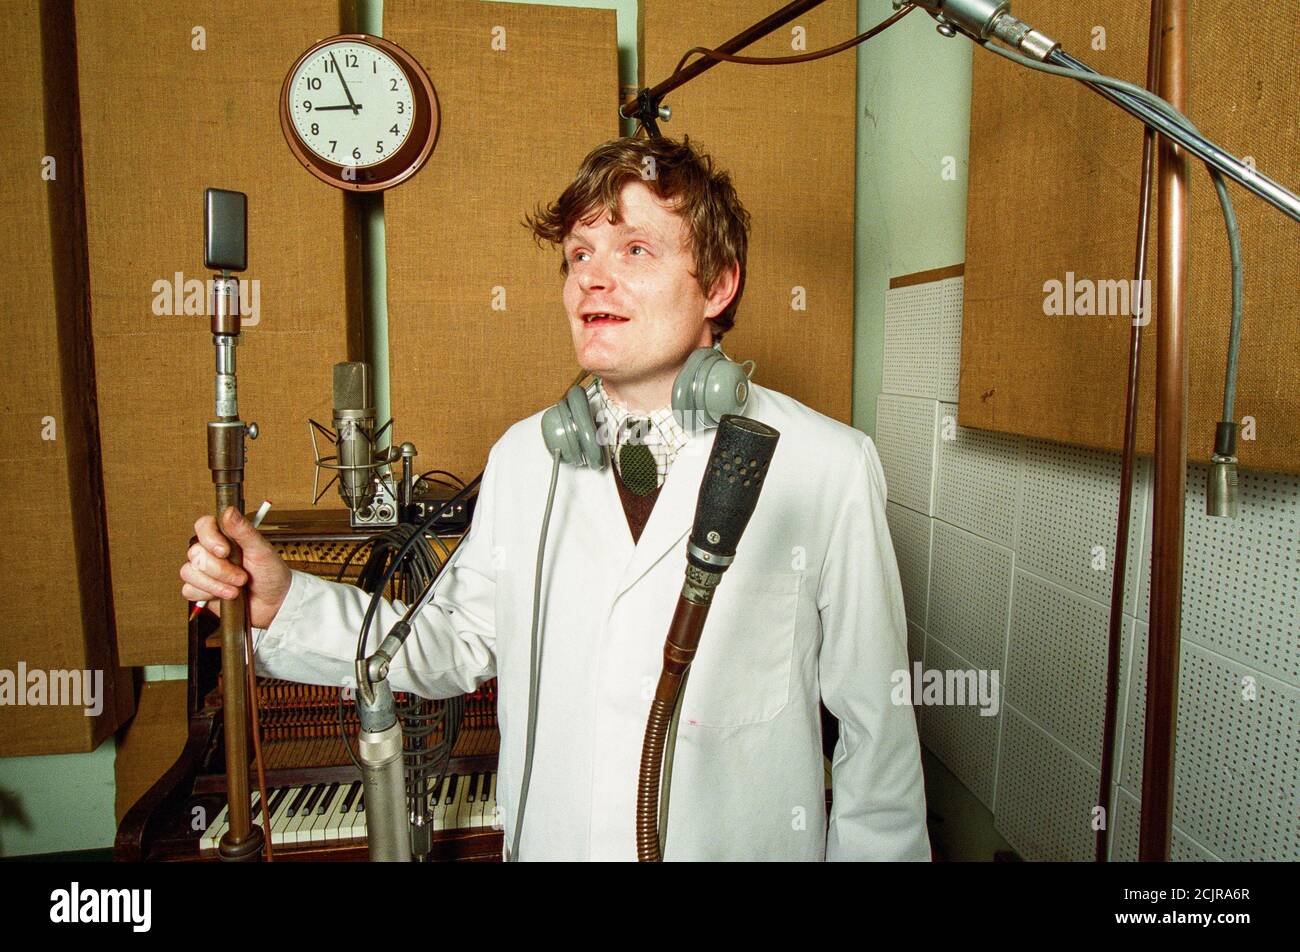 Le producteur de disques analogiques Liam Watson a photographié dans son studio d'enregistrement rétro à Hackney, Londres, Angleterre, Royaume-Uni. Banque D'Images